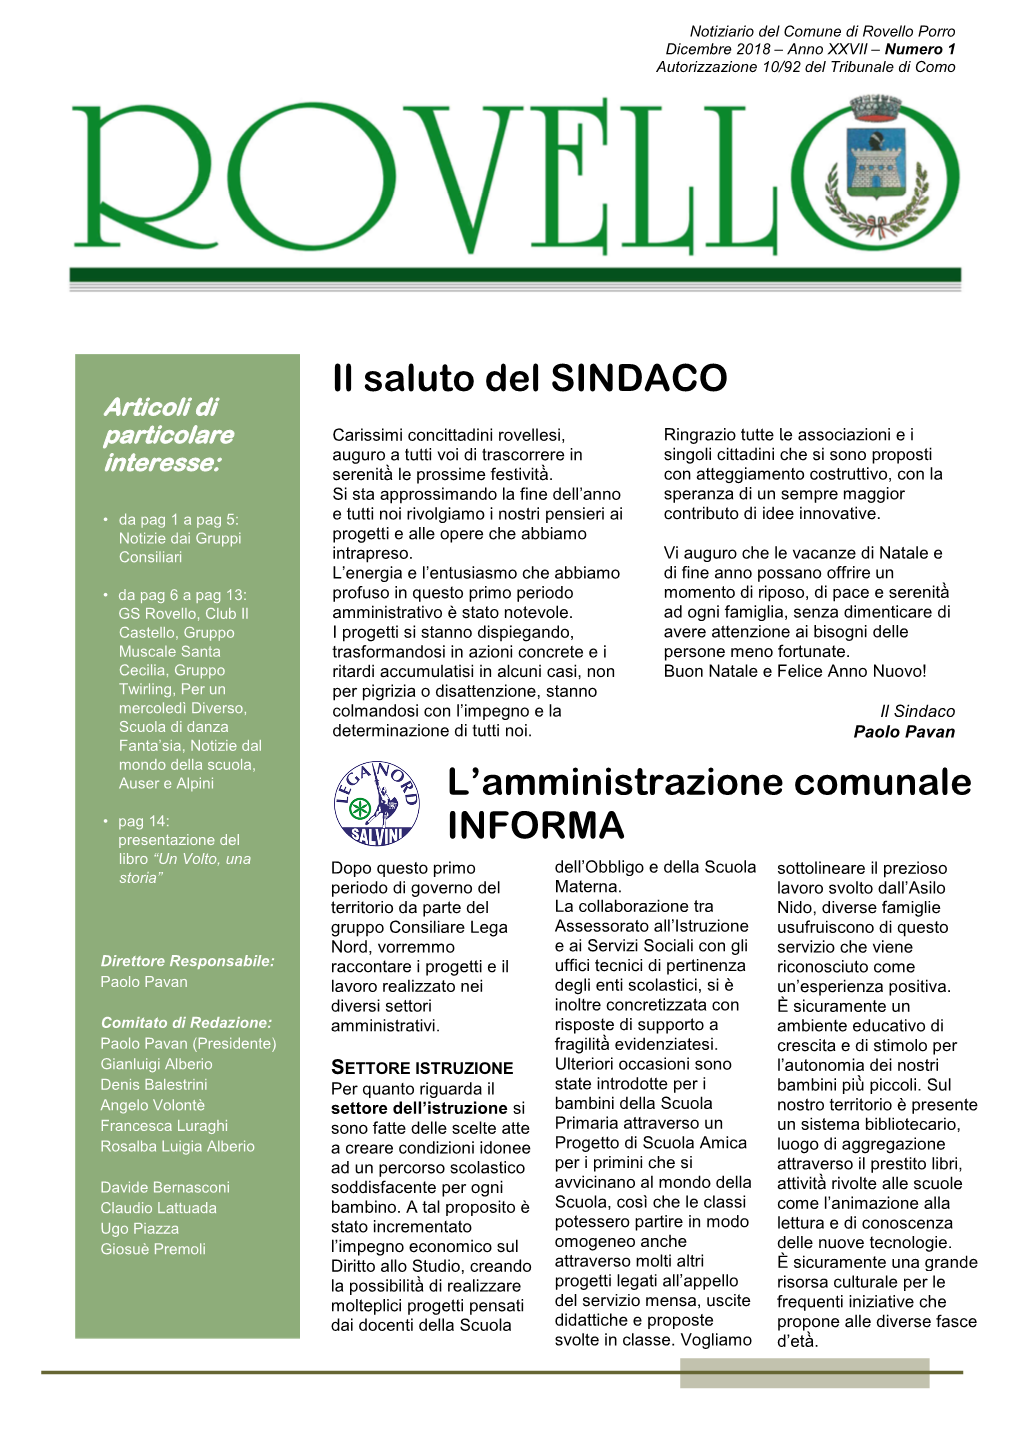 Rovello | Dicembre 2018 – Anno XXVII